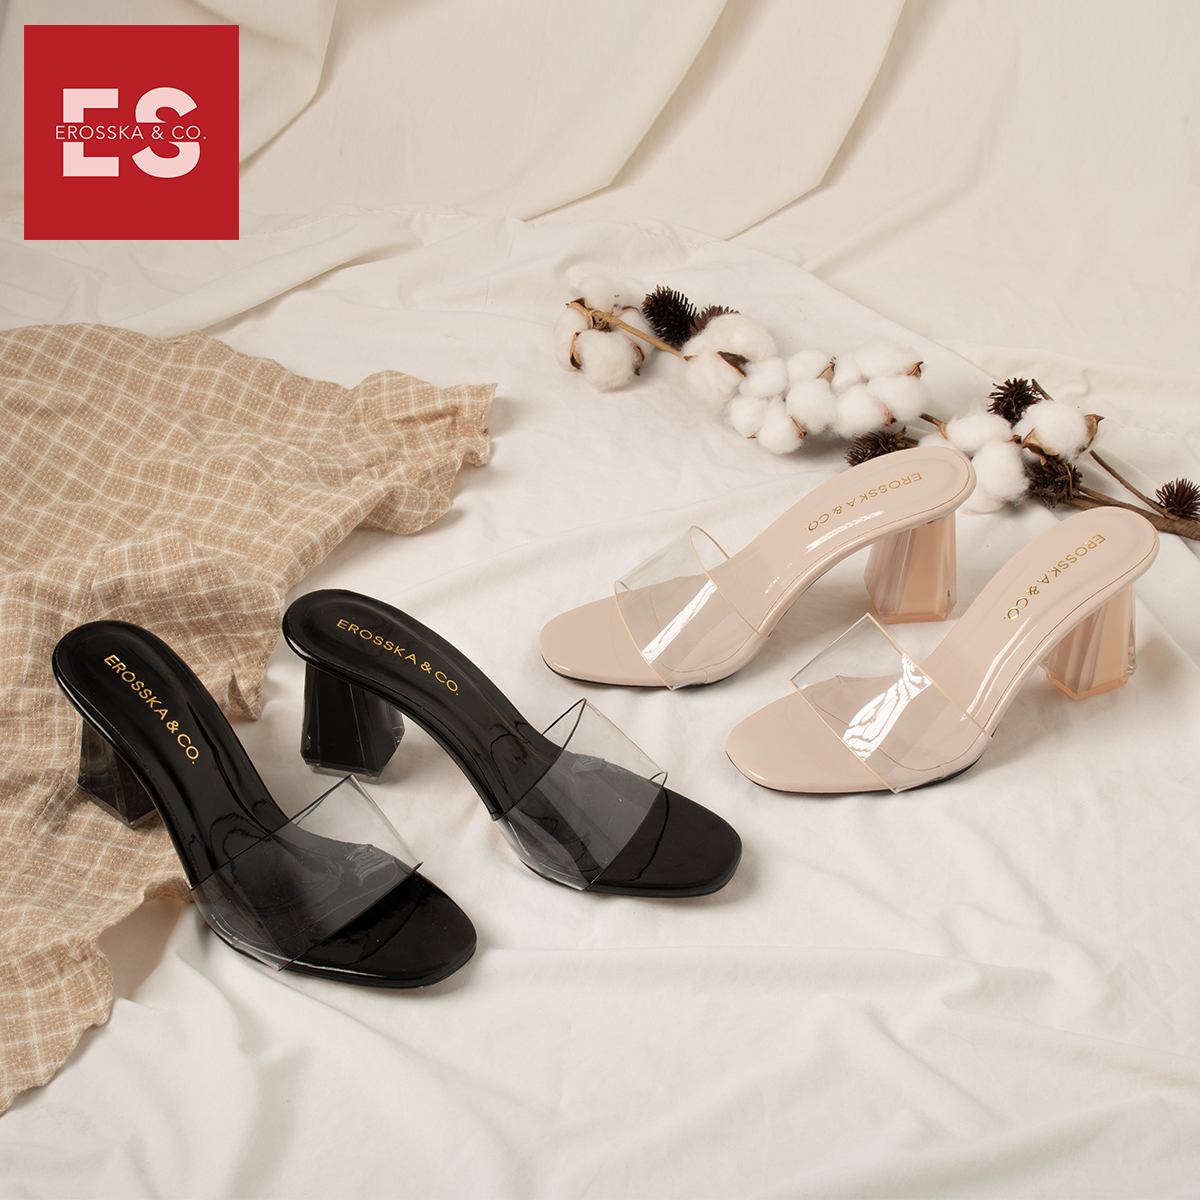 Dép cao gót Erosska quai trong kiểu dáng đơn giản thời trang thanh lịch cao 9cm màu nude - EM040